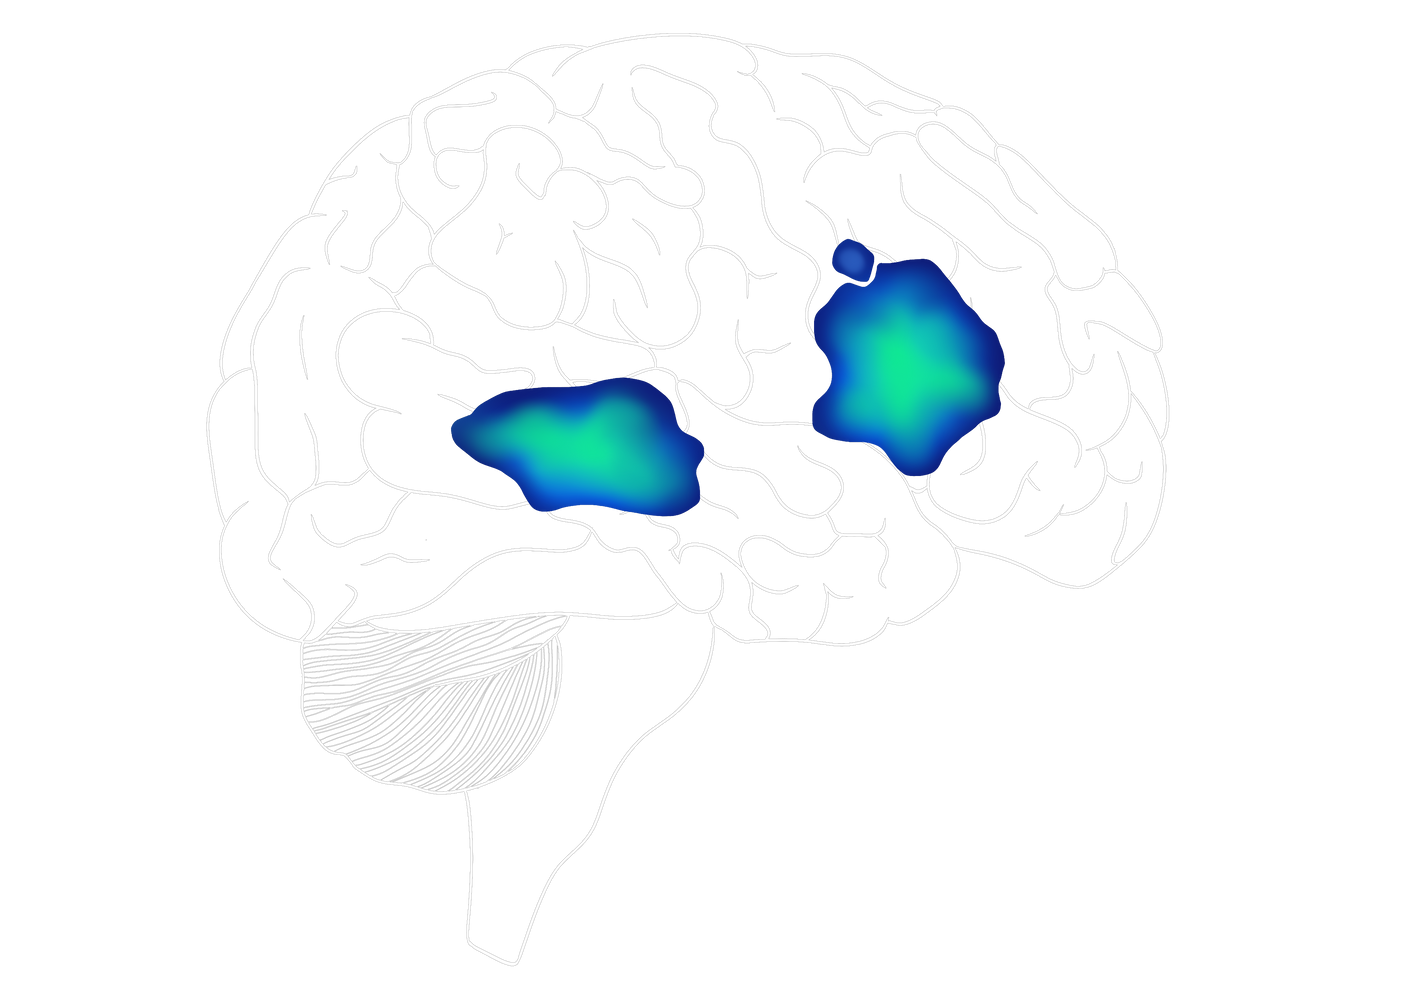 En esta imagen del cerebro se marcan las áreas de Broca y Wernicke imitando a una resonancia magnética funcional. El cerebro esta invertido, mostrando el otro hemisferio.